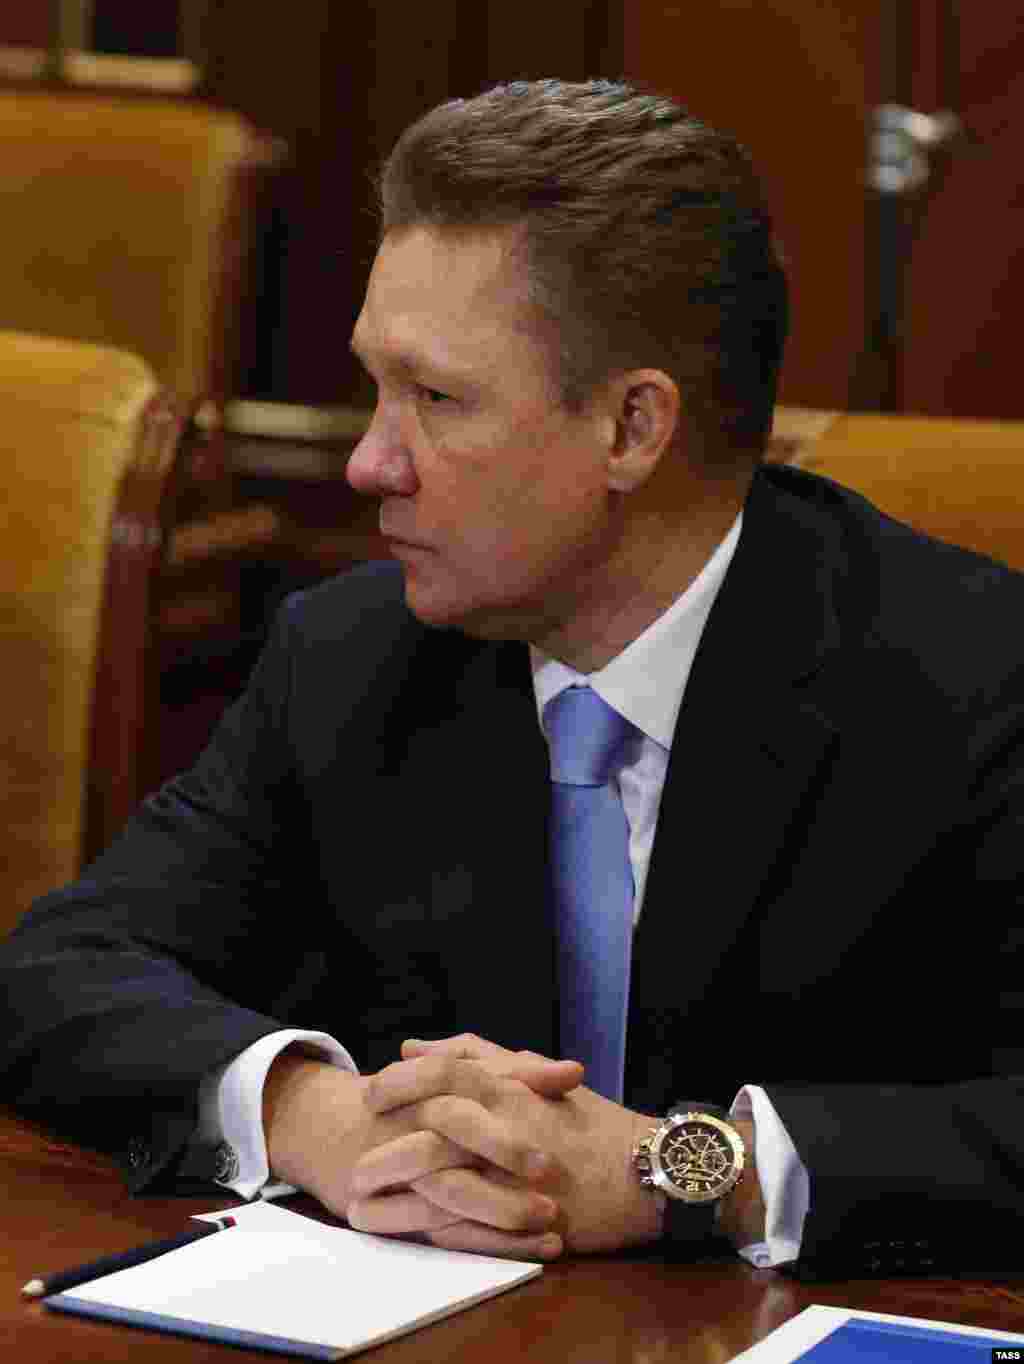 Şefului de la Gazprom, Aleksei Miller, ceasul de $112.000 sau 7.000.000 ruble&nbsp;îi dă siguranţă. Sursa: Ведомости 